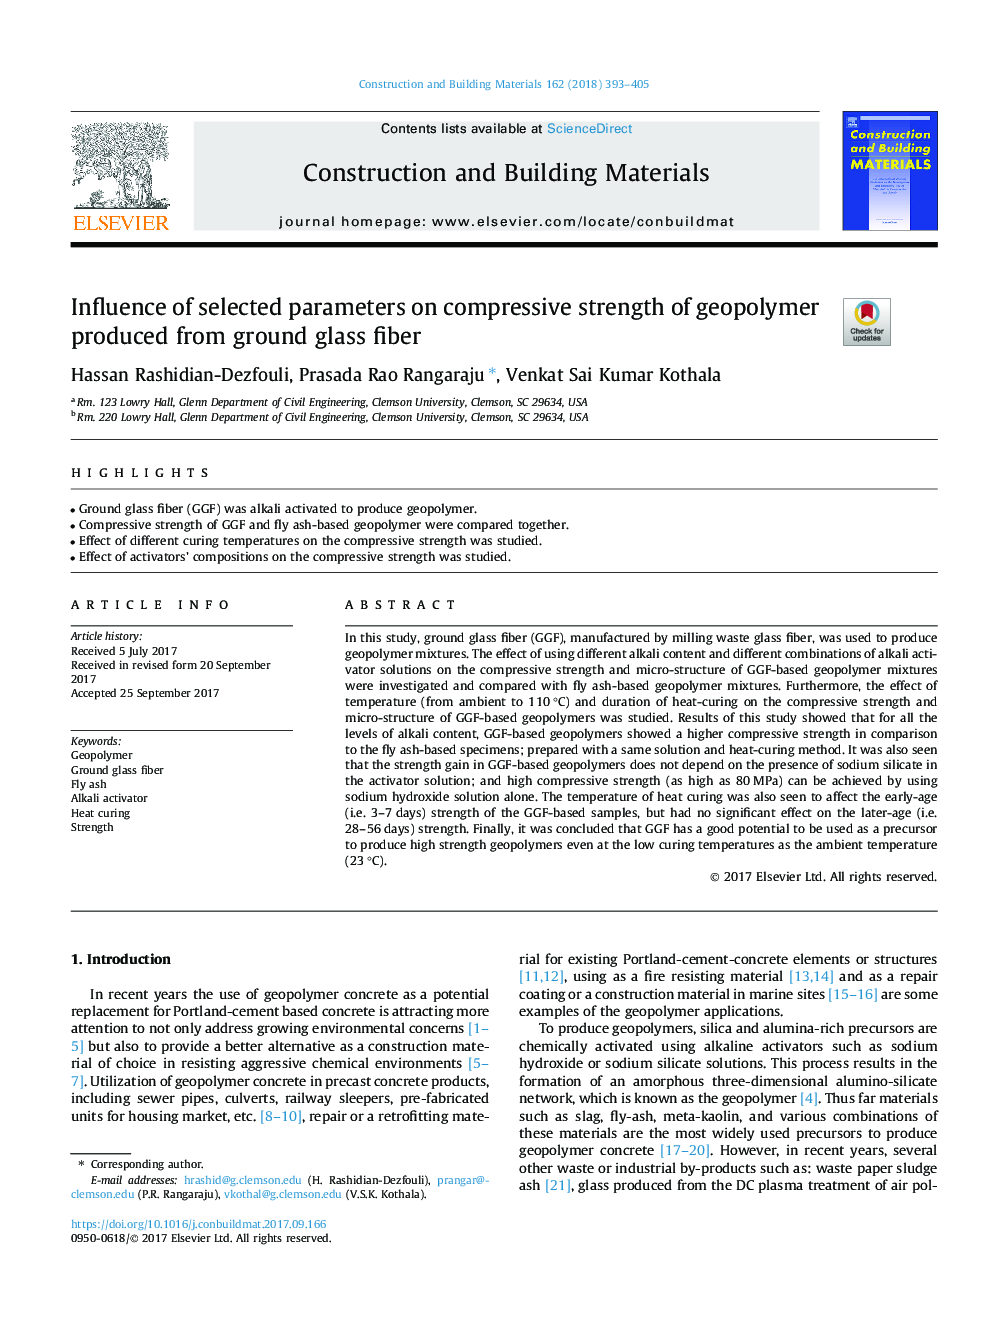 تأثیر پارامترهای انتخابی بر مقاومت فشاری ژئوپلیمر تولید شده از فیبر خاکستری 